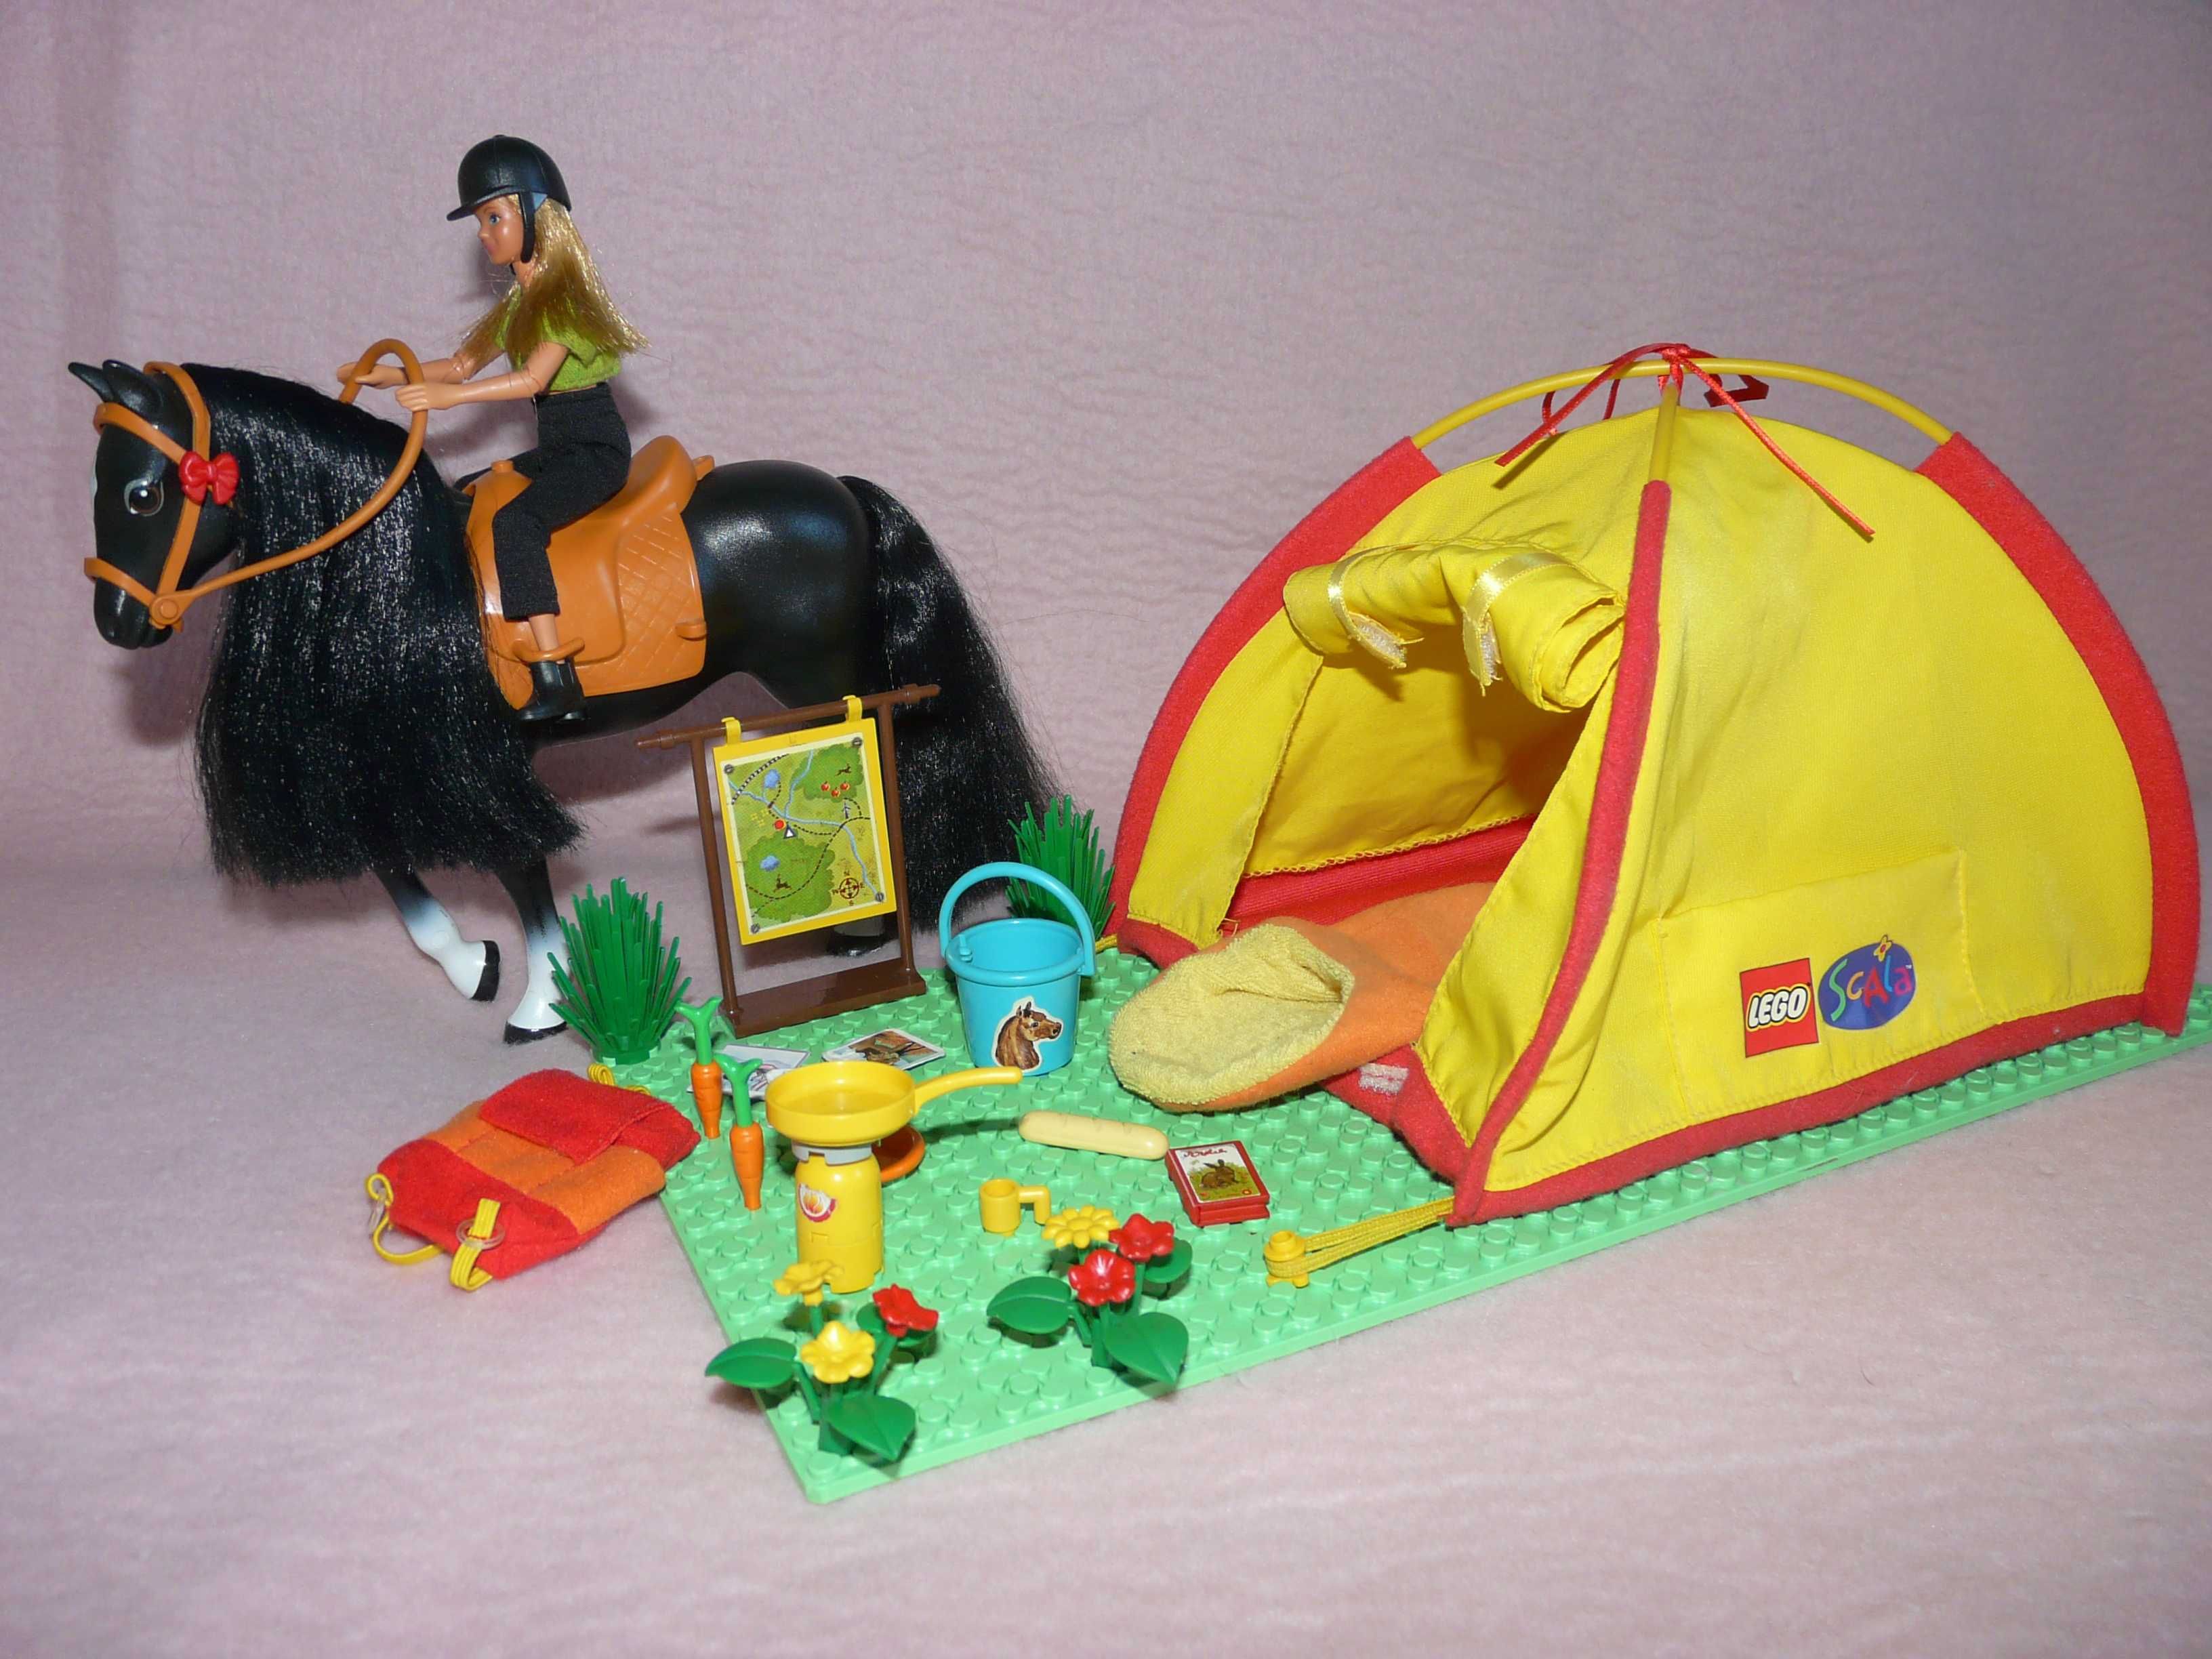 Lego scala belville Biwak konny koń 19 cm lalka 14 cm namiot